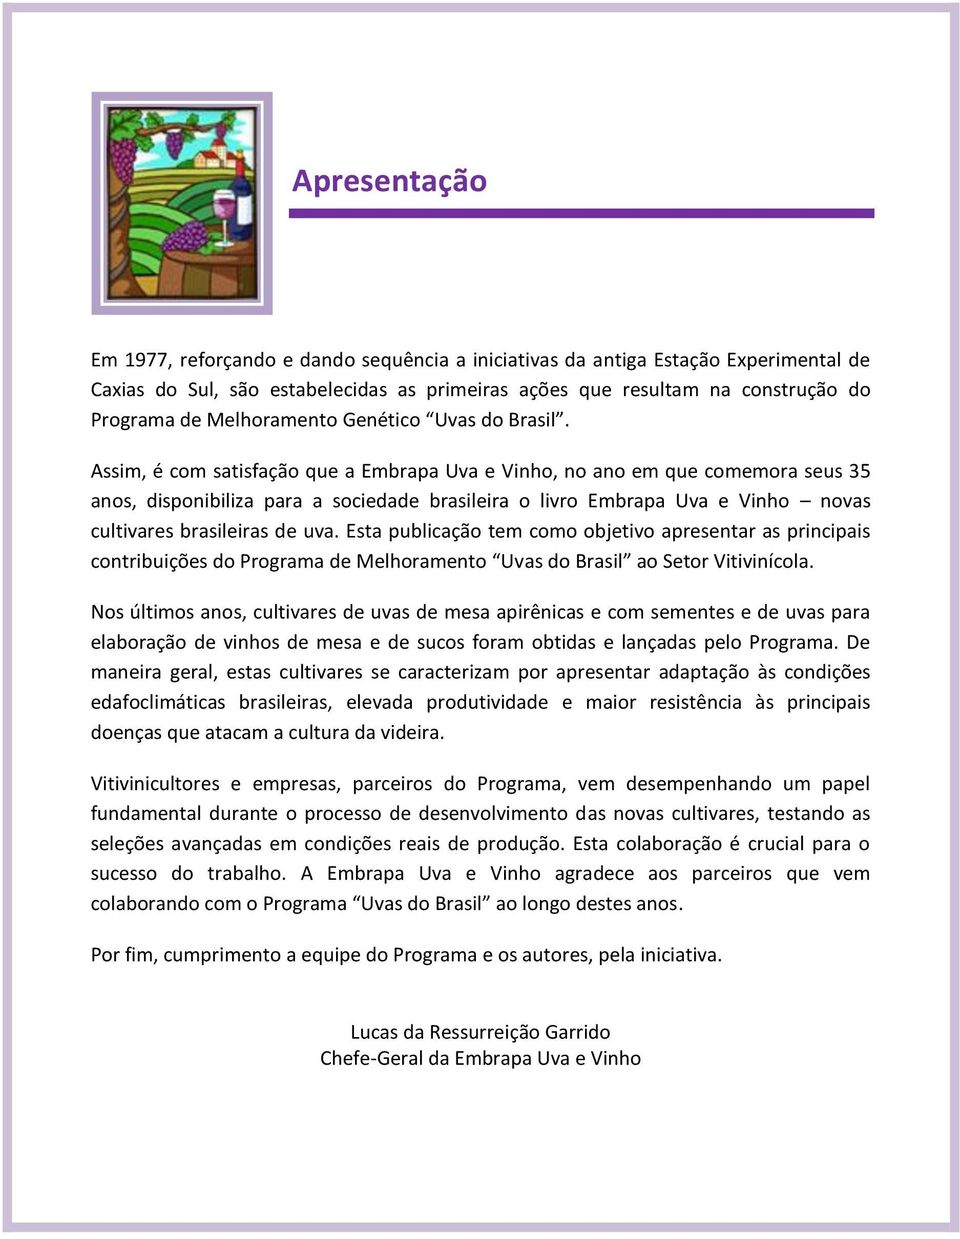 Assim, é com satisfação que a Embrapa Uva e Vinho, no ano em que comemora seus 35 anos, disponibiliza para a sociedade brasileira o livro Embrapa Uva e Vinho novas cultivares brasileiras de uva.